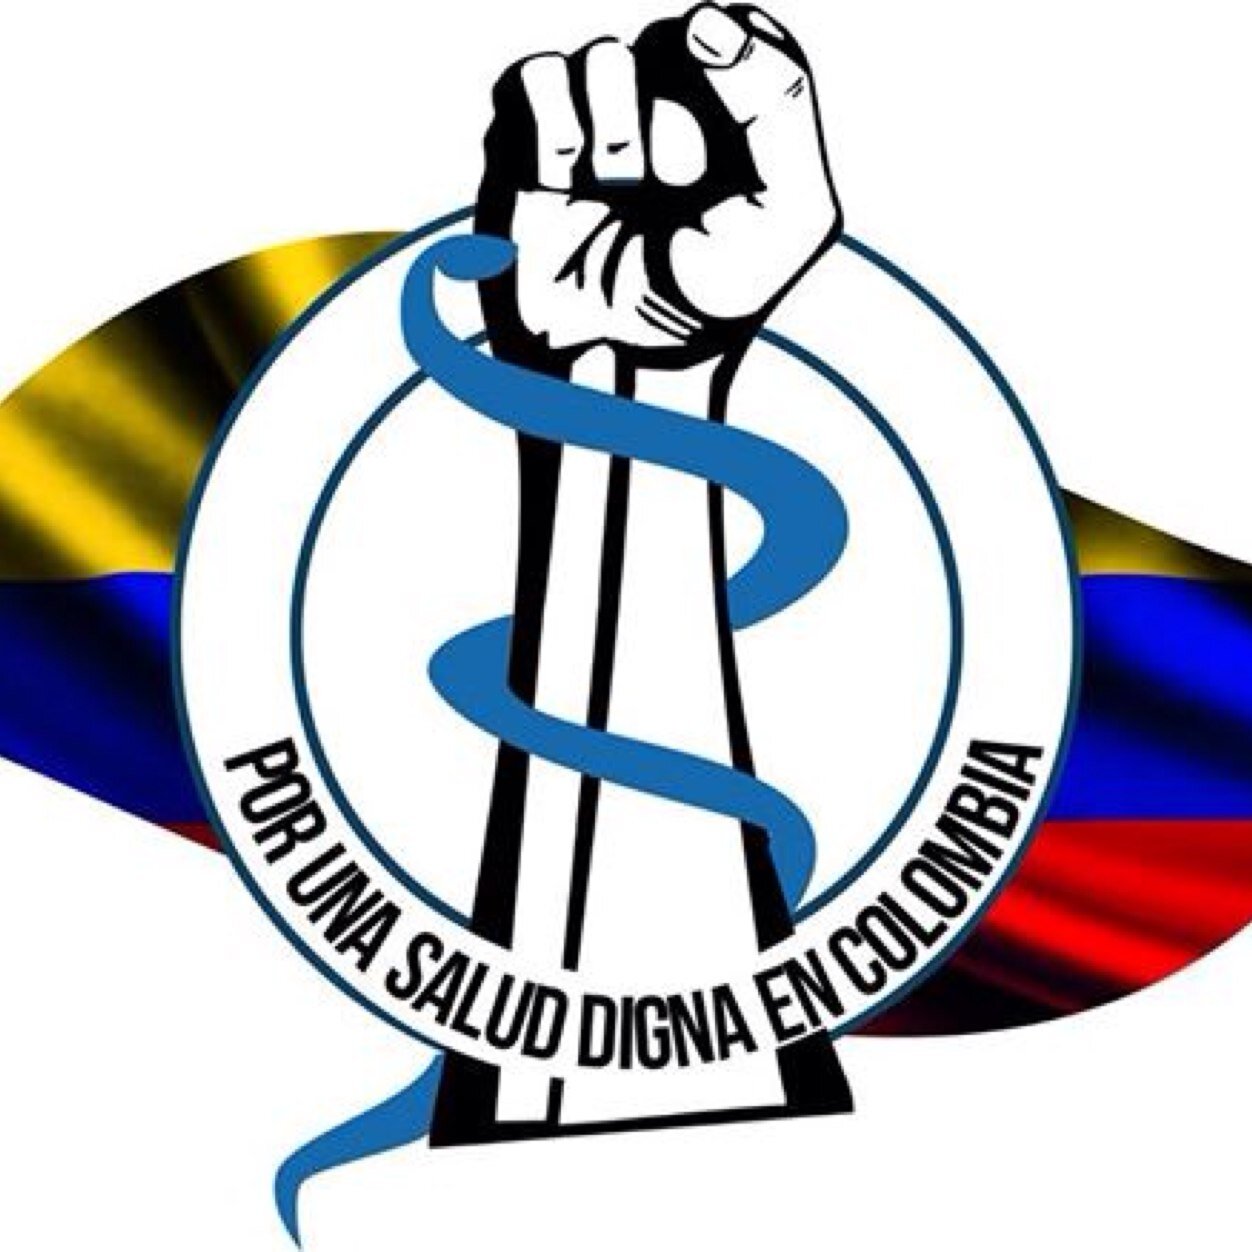 Movimiento de caracter social que lucha por la dignidad de la salud de todos los Colombianos